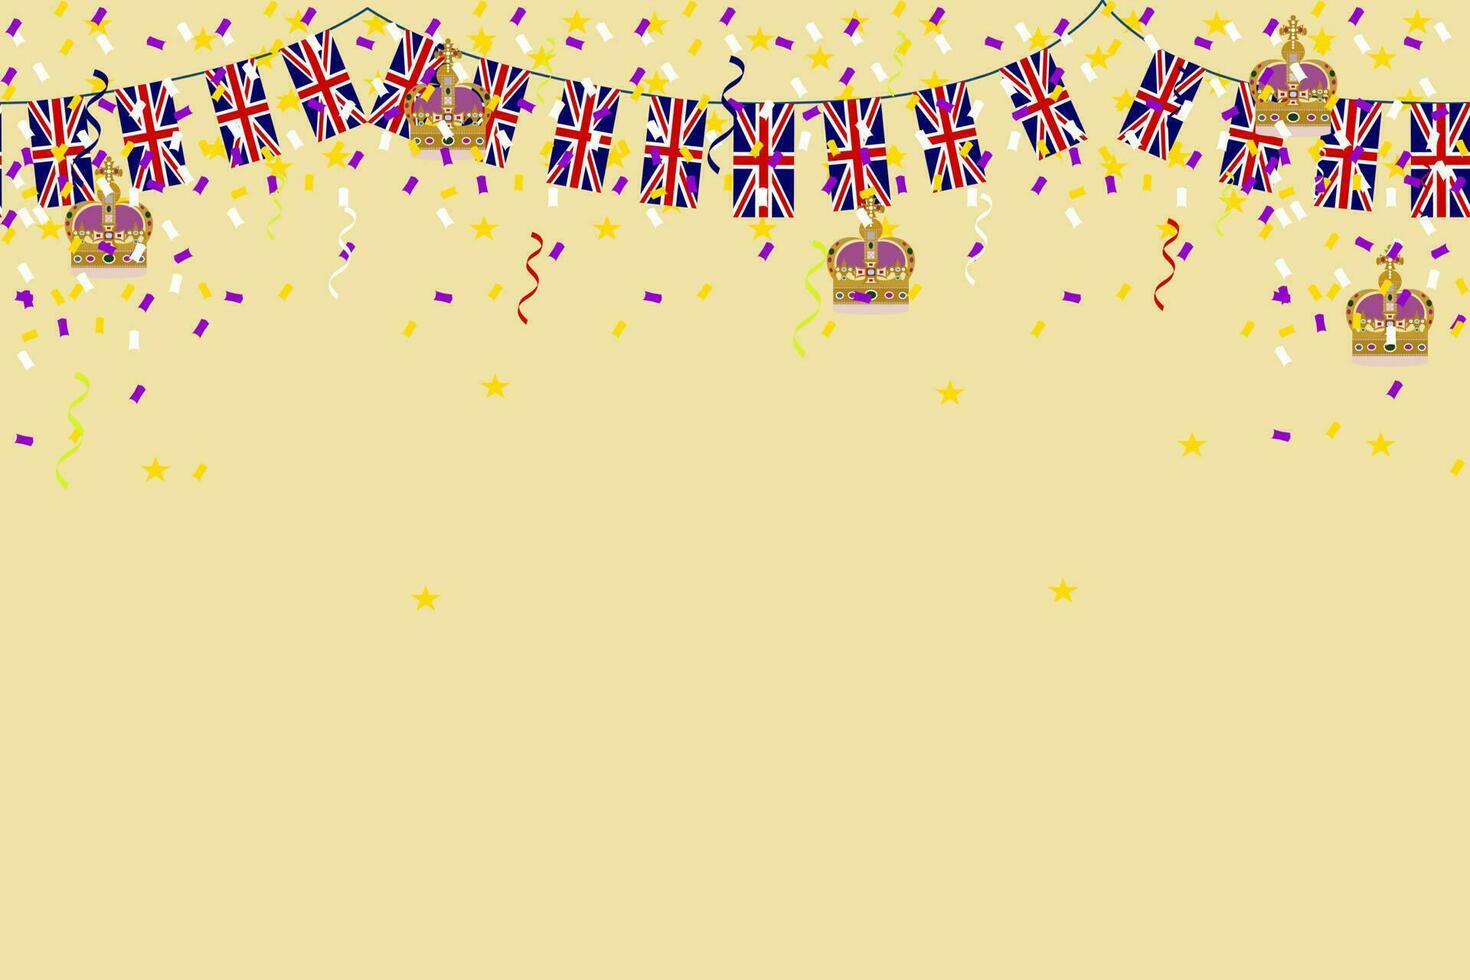 Coronation crown king UK celebration UK Union Jack flag background vector illustration party